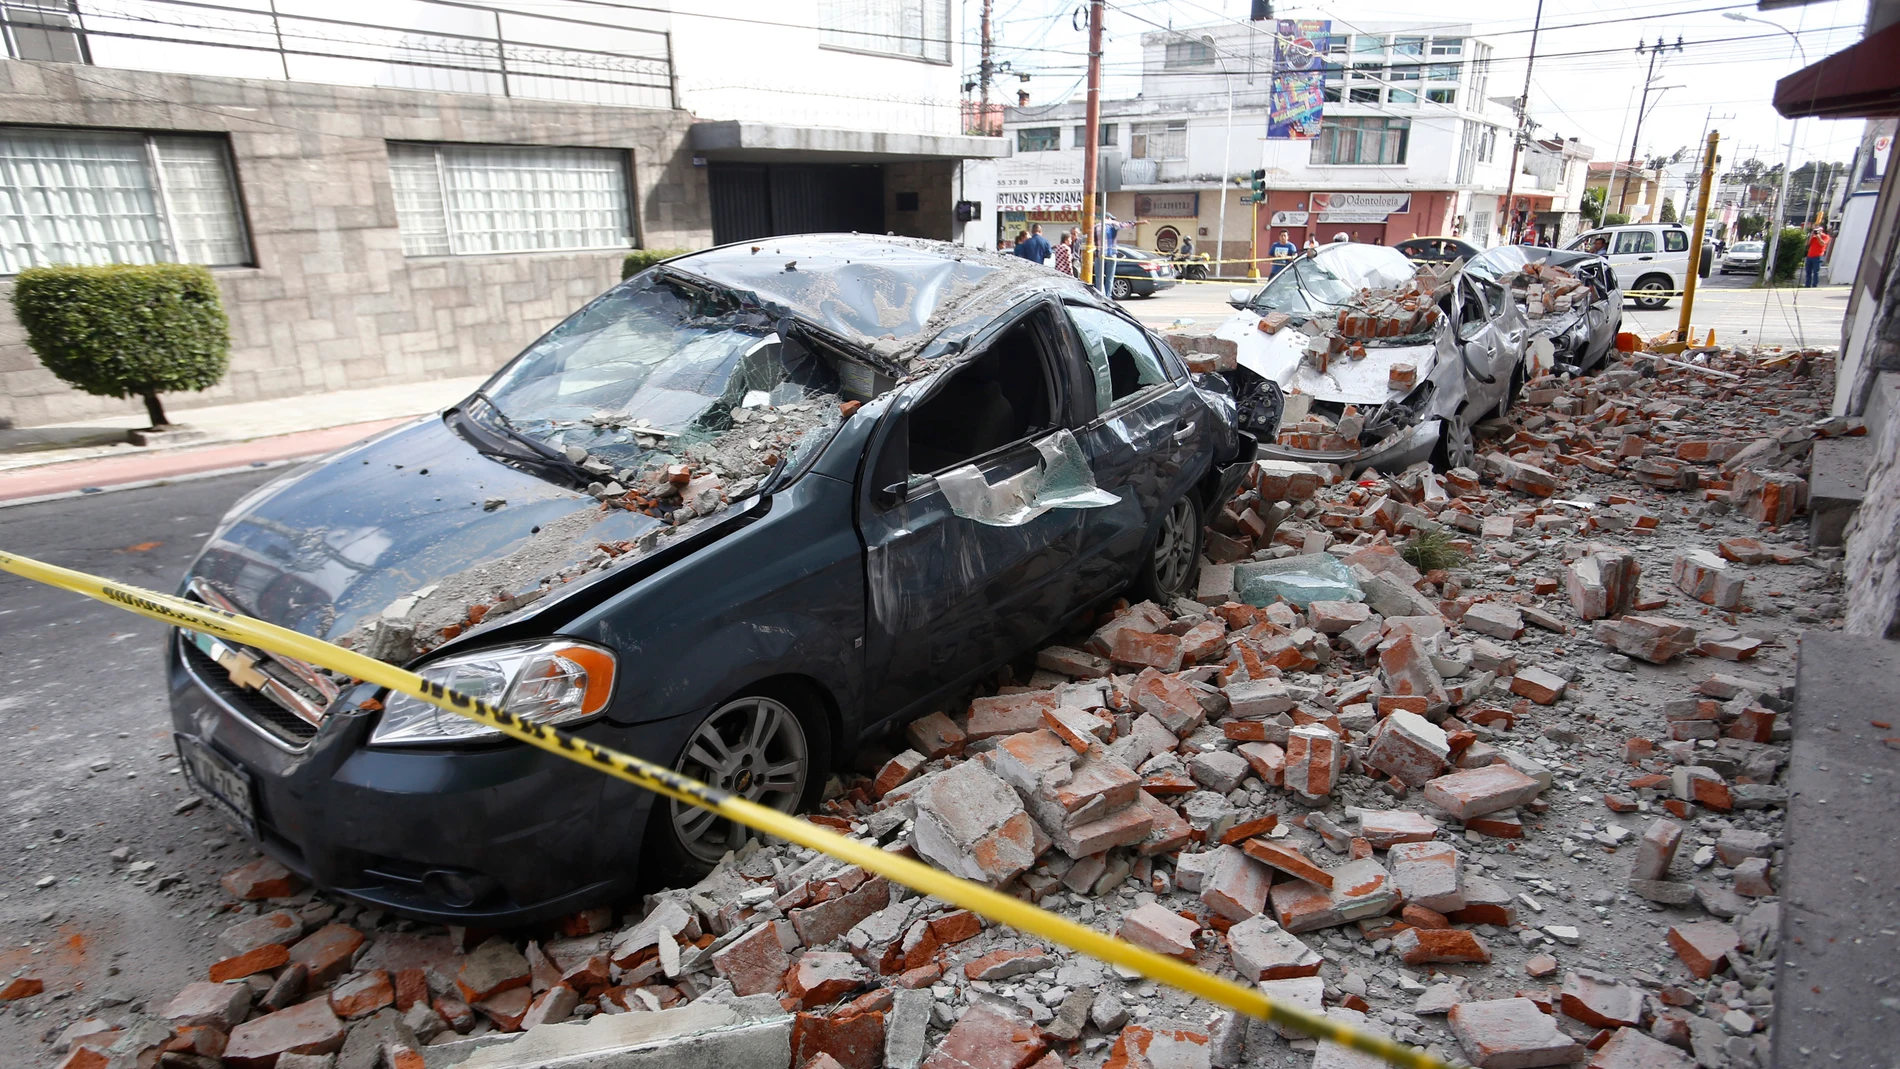 Derrumbes en la ciudad de Puebla, en México, tras el terremoto